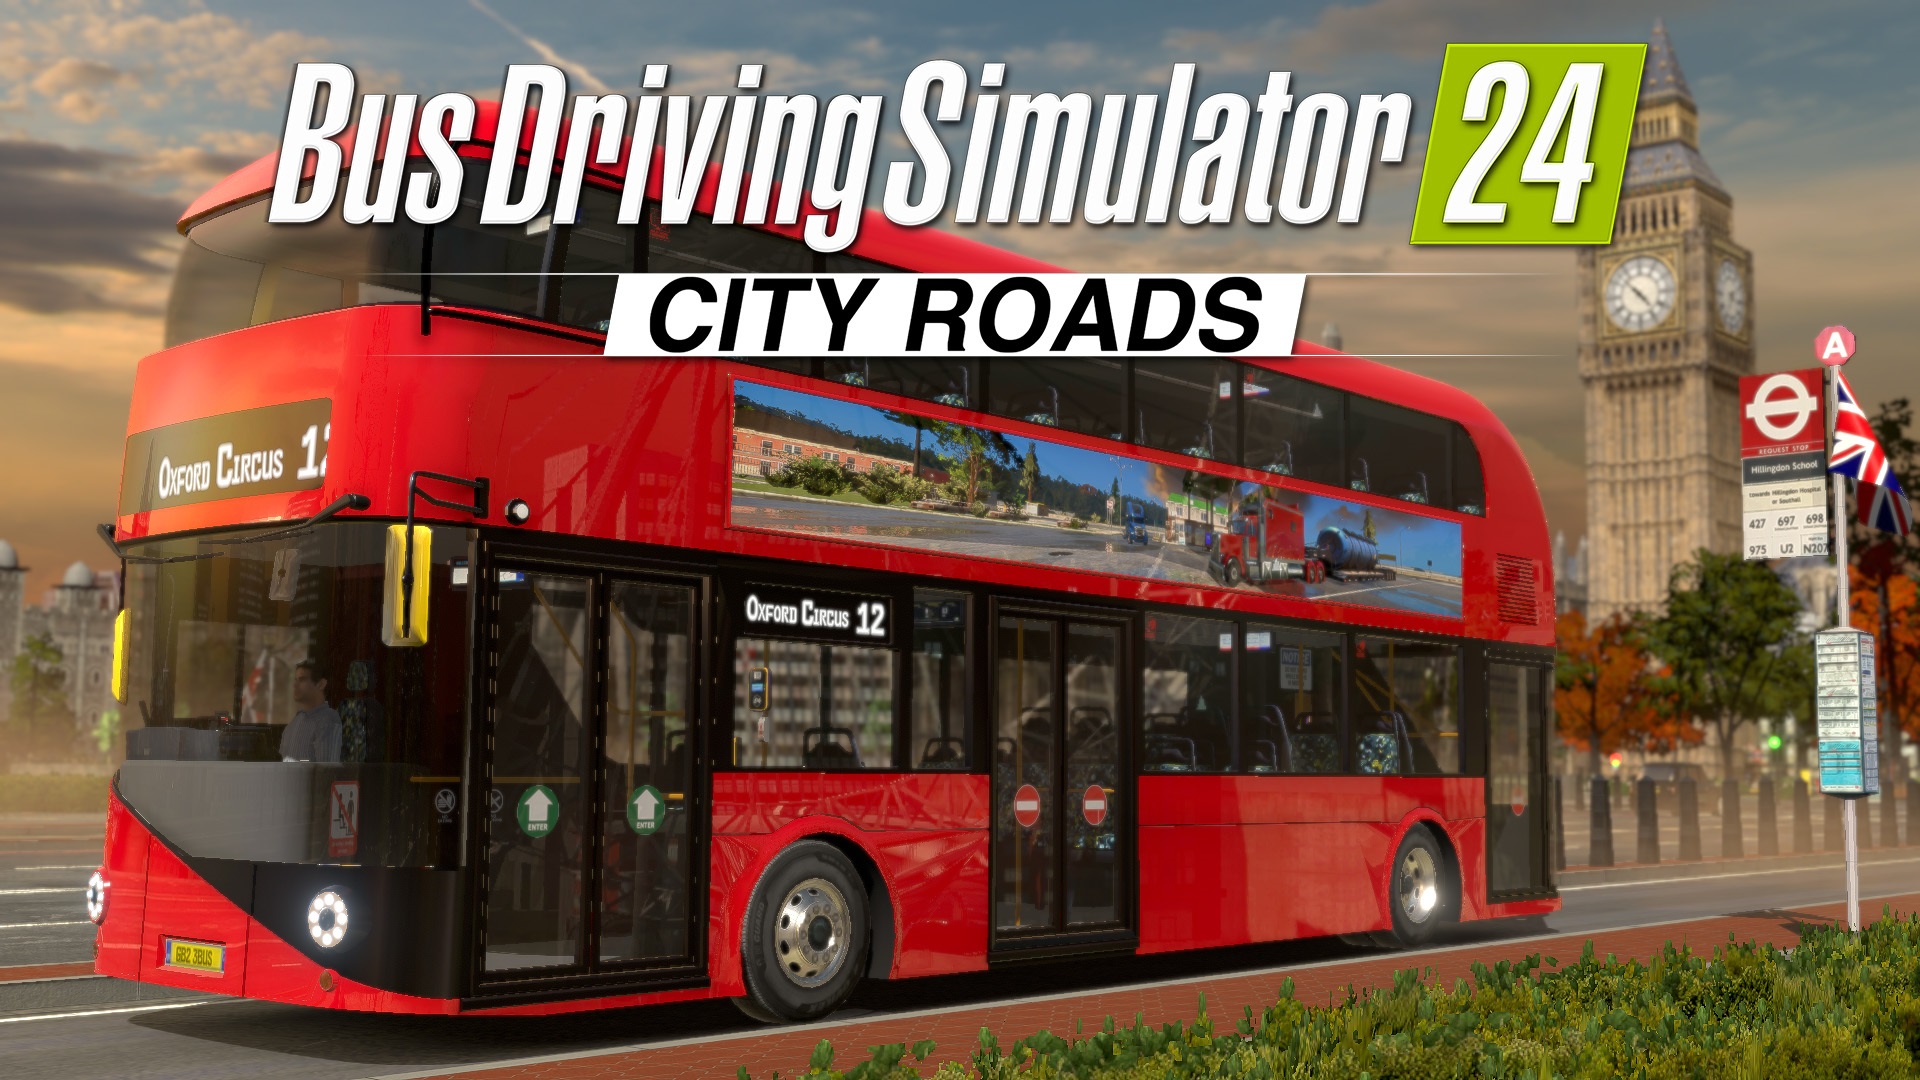 Bus Driving Simulator 24 - City Roads DLC London Double Decker Bus